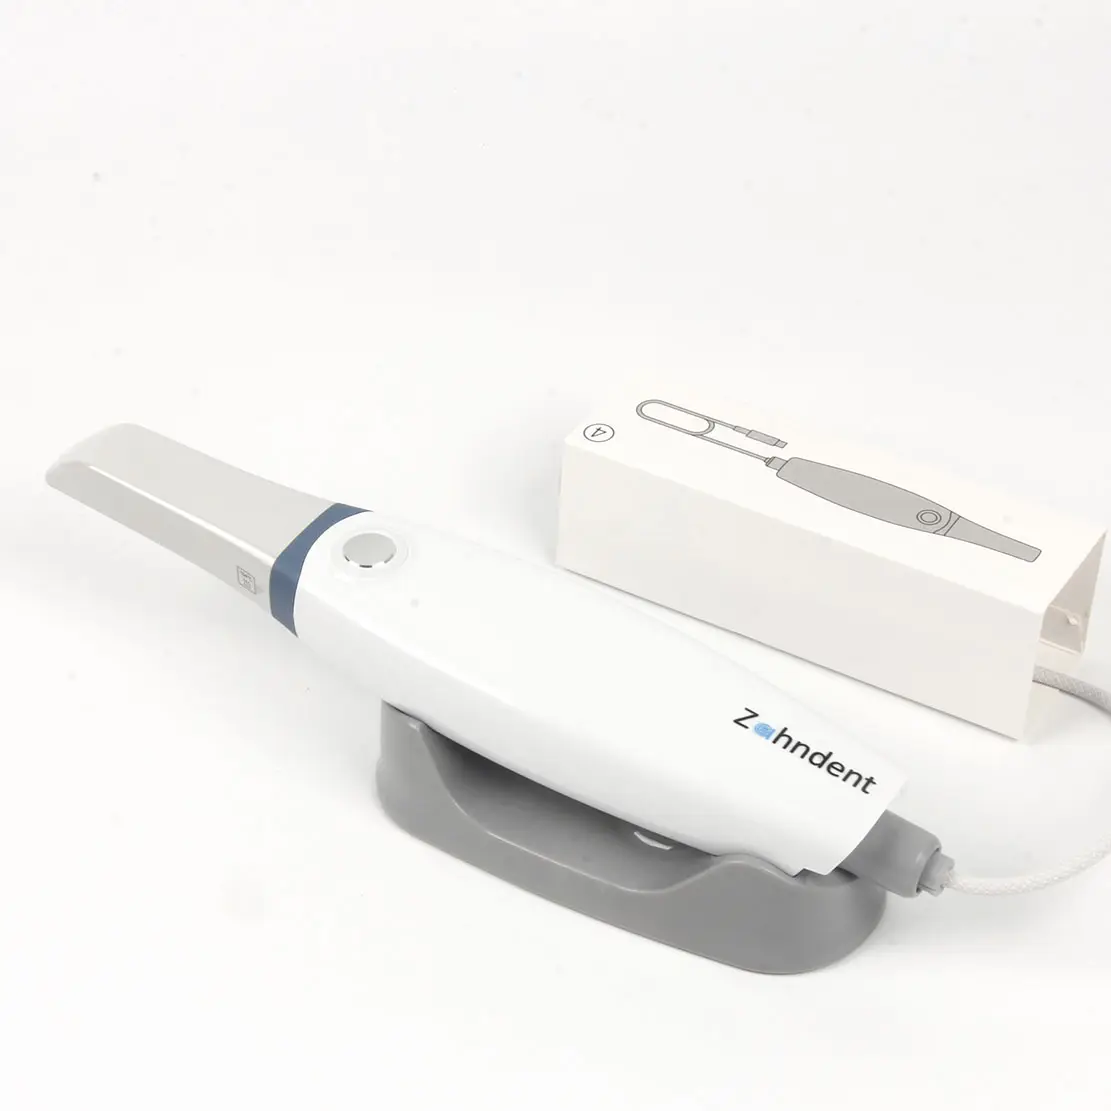 Zahndent equipamento de laboratório dentário de alto desempenho oem cad cam scanner 3d dental intraoral